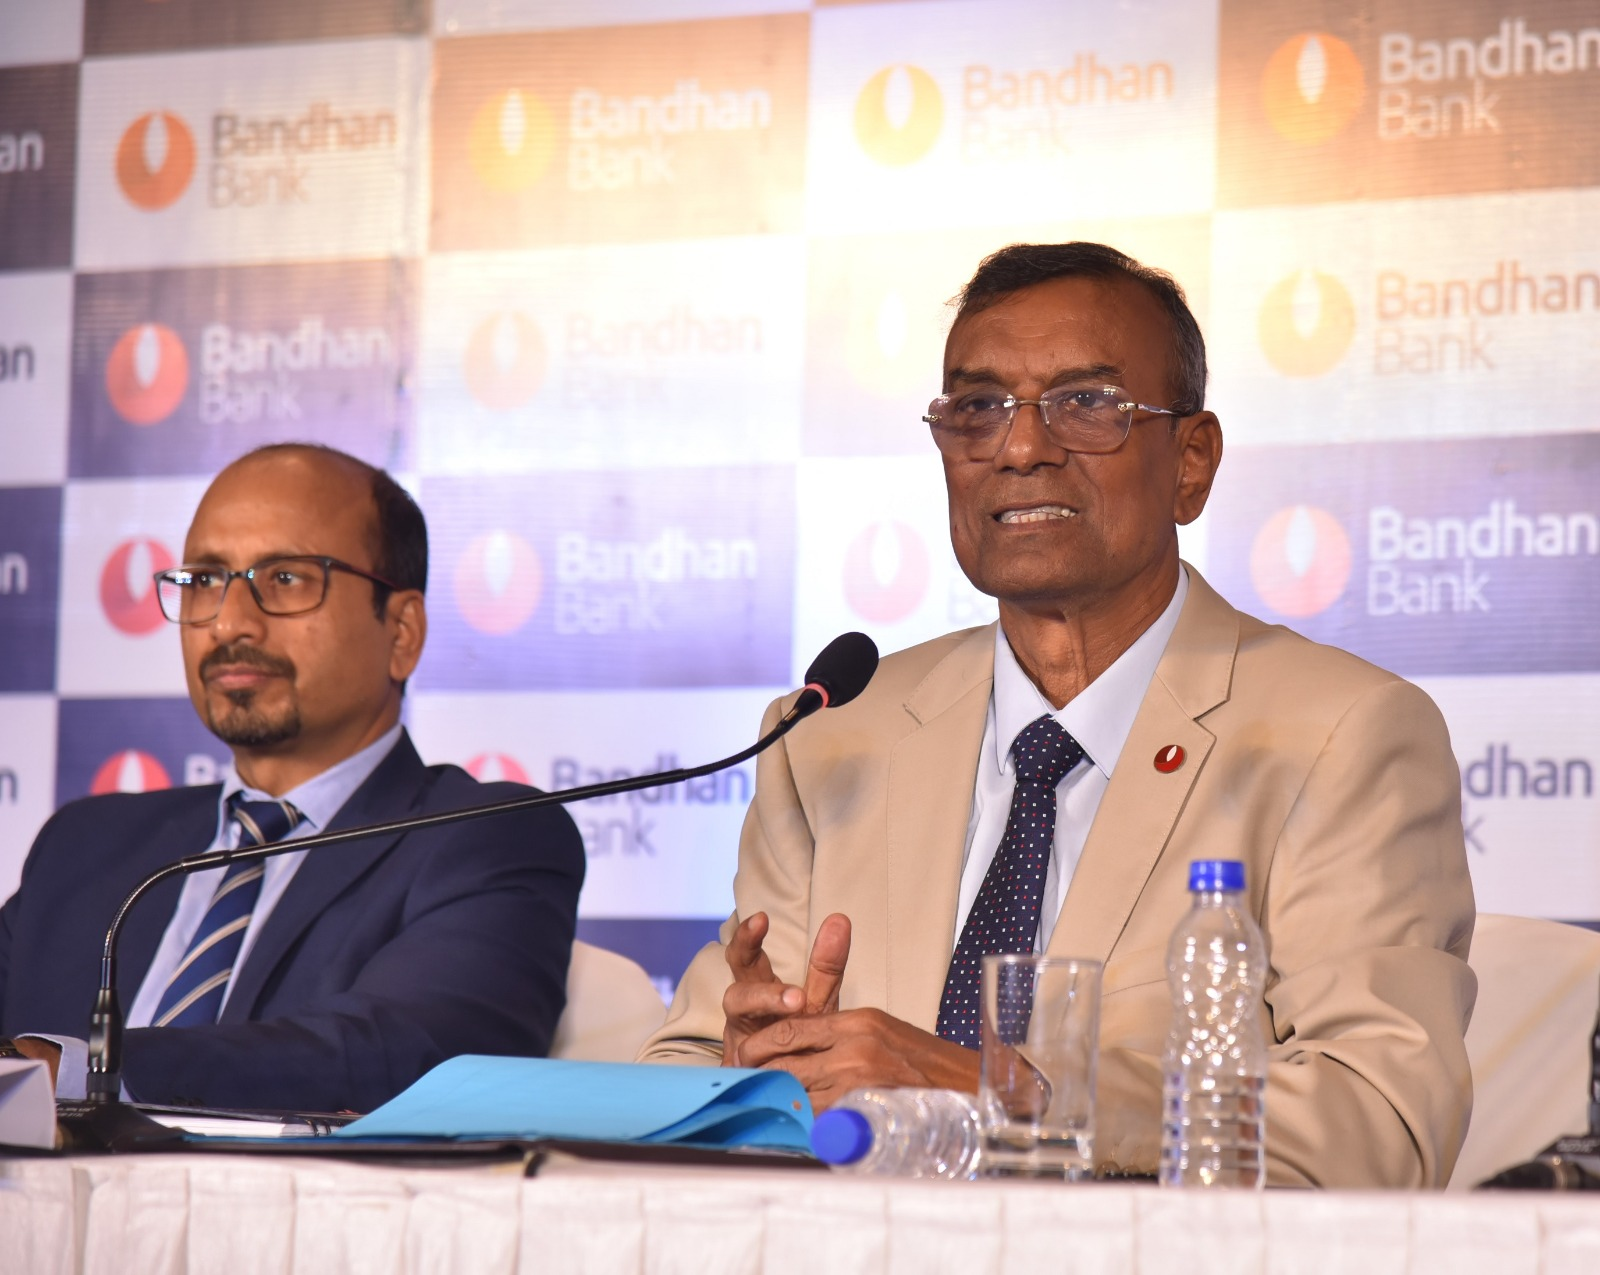 (L-R) Ratan Kumar Kesh, Executive Director, Bandhan Bank and Chandra Shekhar Ghosh, MD & CEO, Bandhan Bank at the press conference in Kolkata.